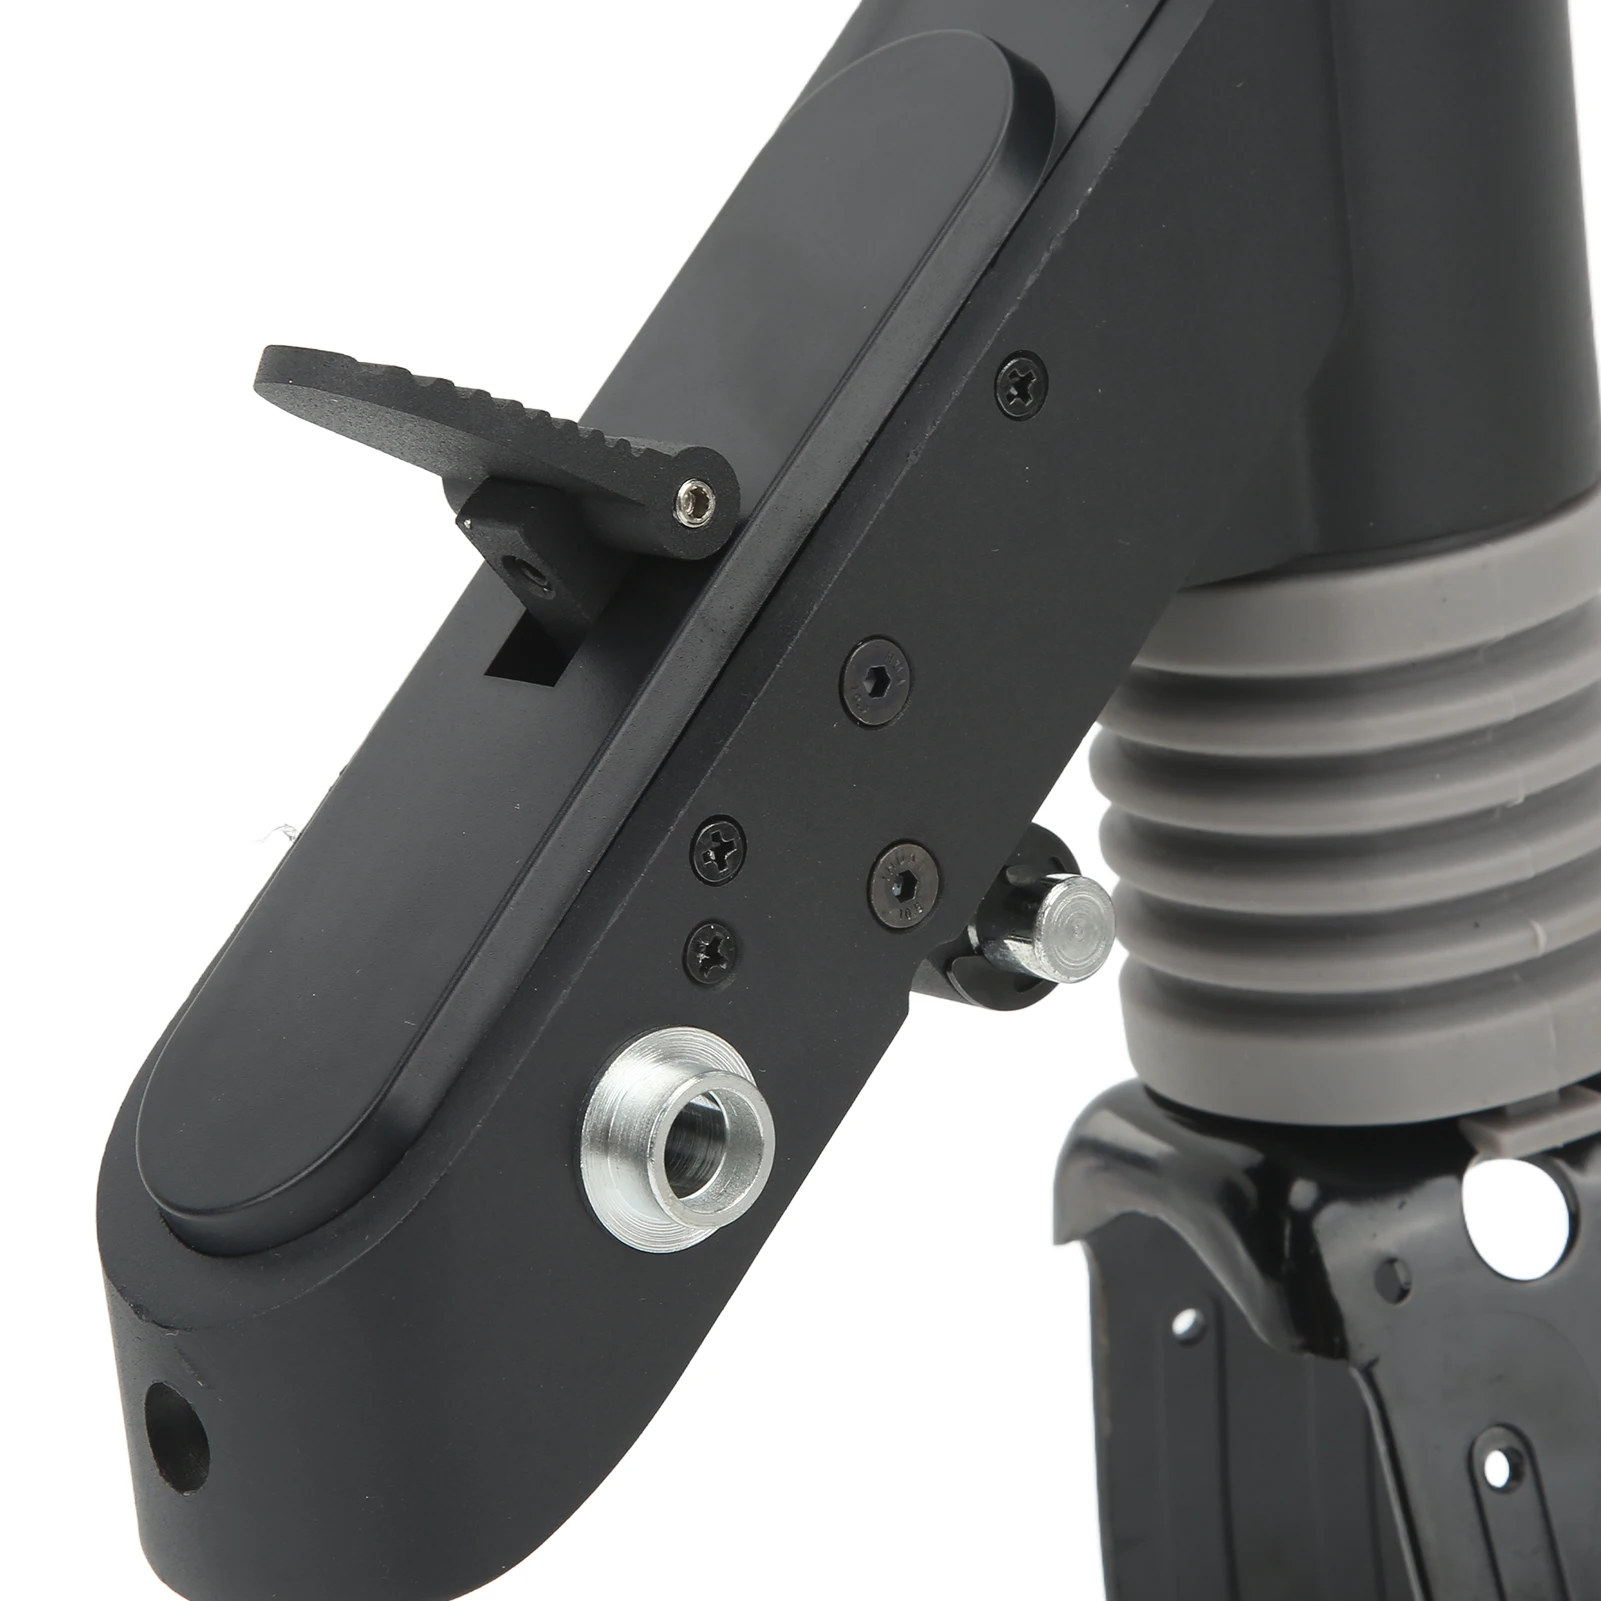 Передняя вилка электрического скутера из коррозионностойкого, защищенного от ржавчины алюминиевого сплава, замена передней вилки скутера для обновления